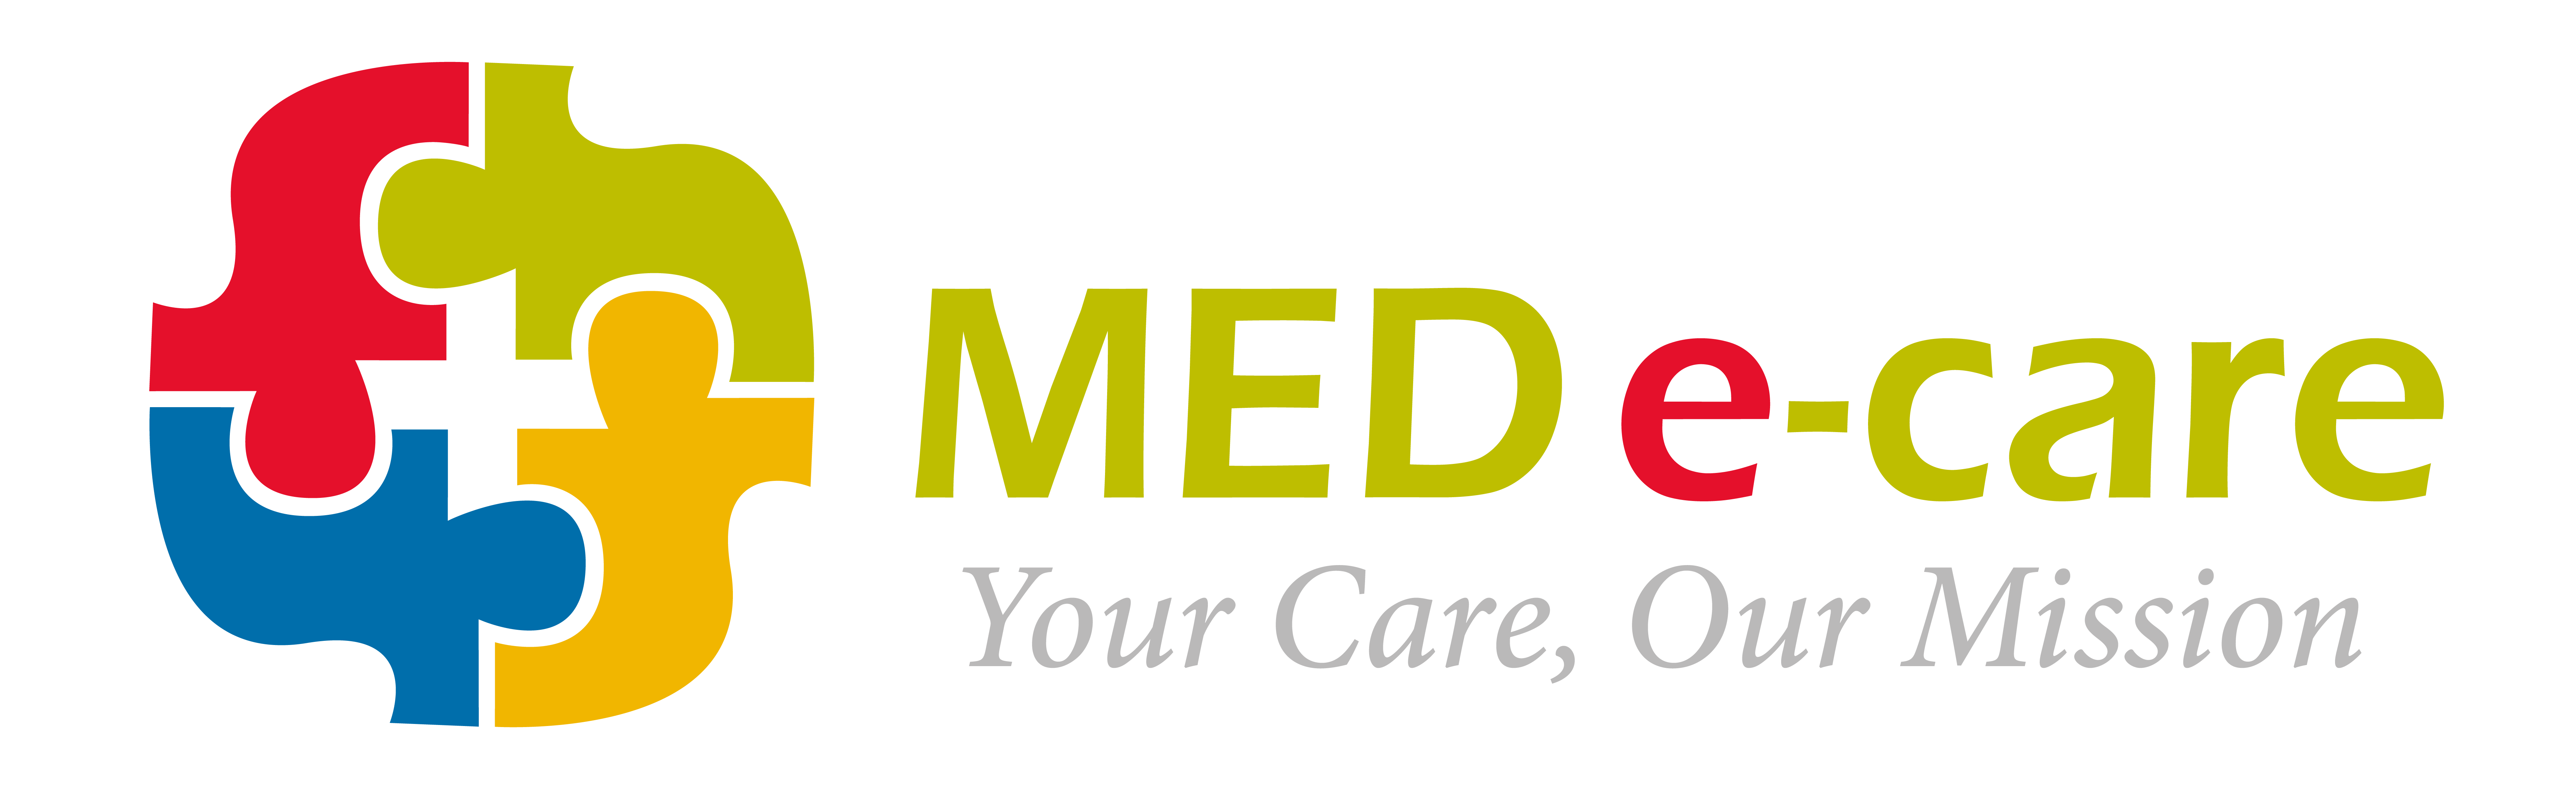 medecare-logo-full-logo-colour-01-2